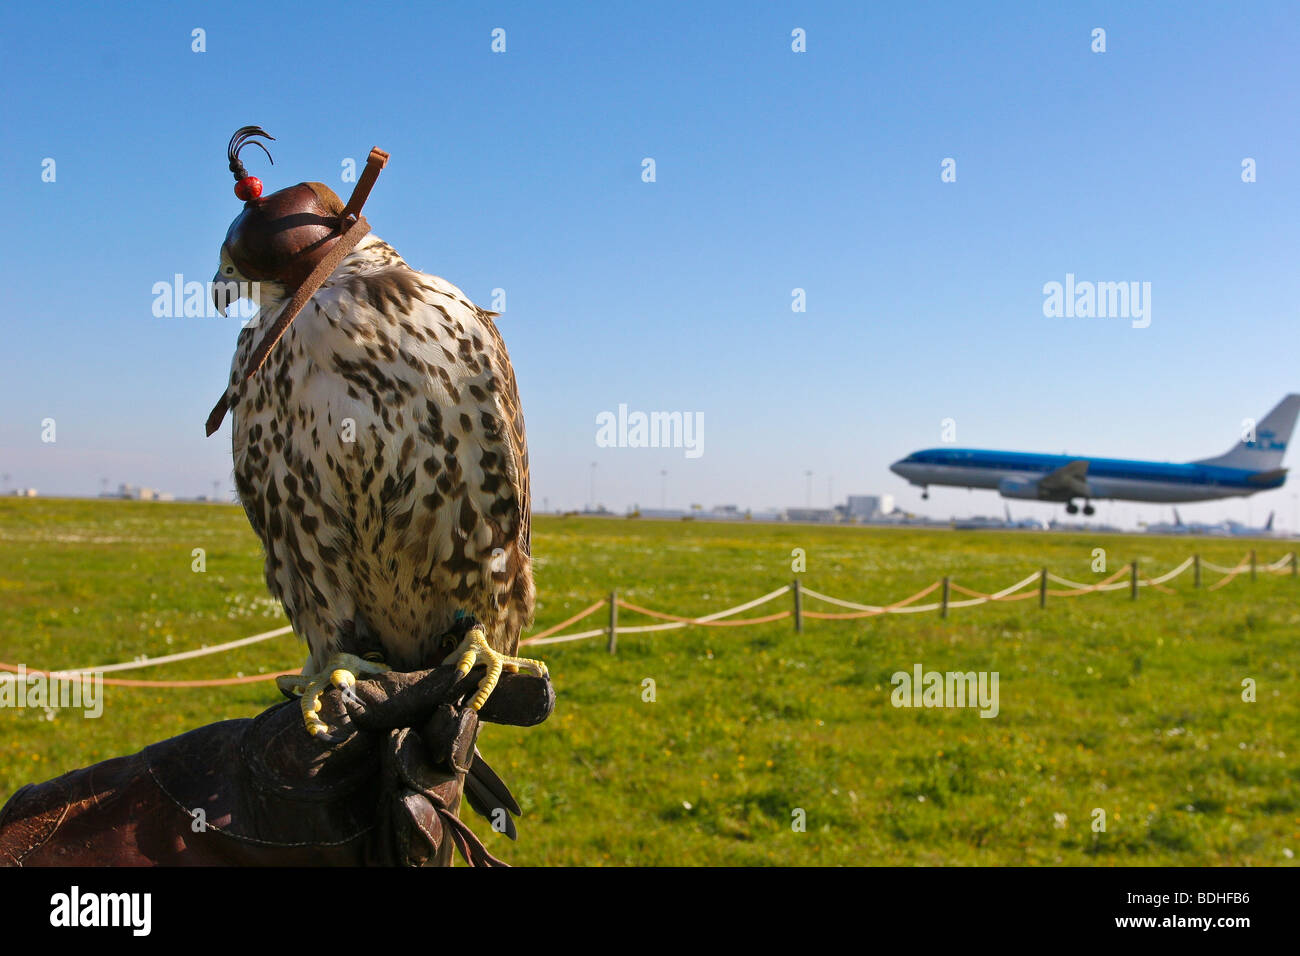 aviation birds of prey falcon falconry Stock Photo